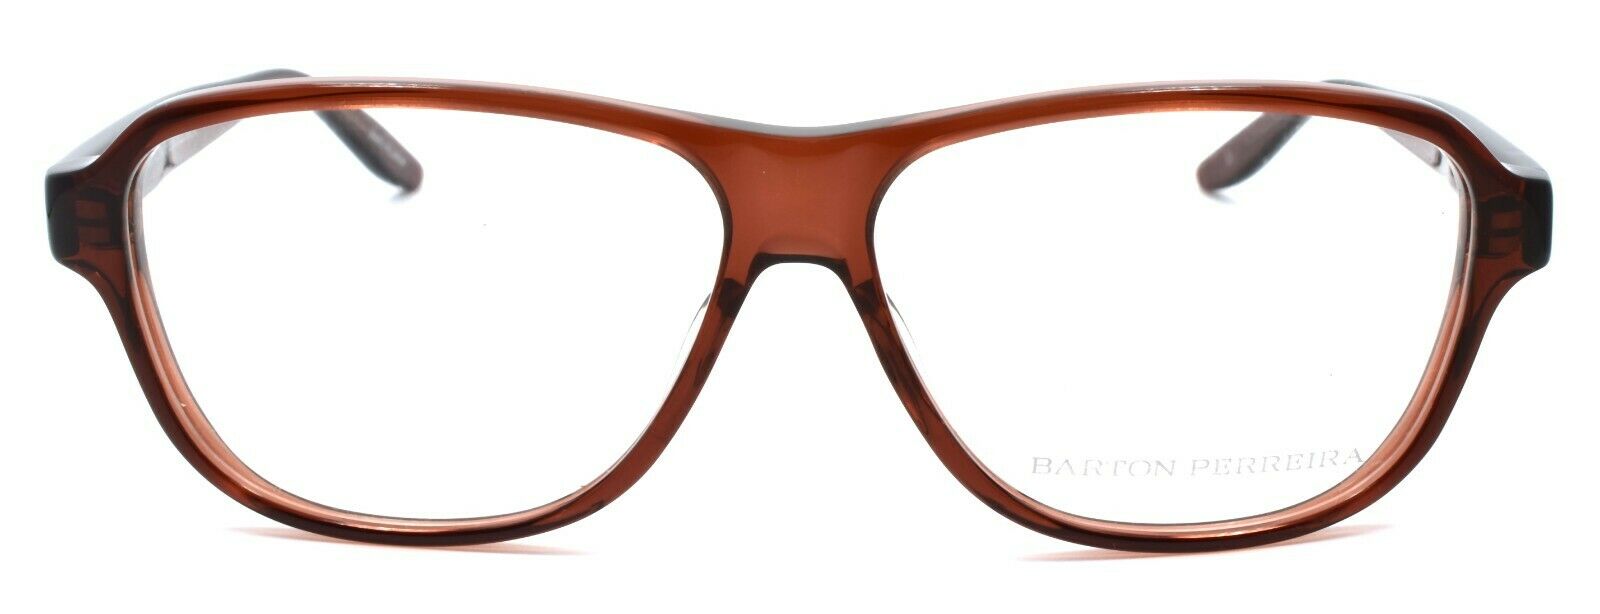 2-Barton Perreira Newmar Unisex Eyeglasses 57-13-138 Sierra Brown JAPAN-672263038955-IKSpecs